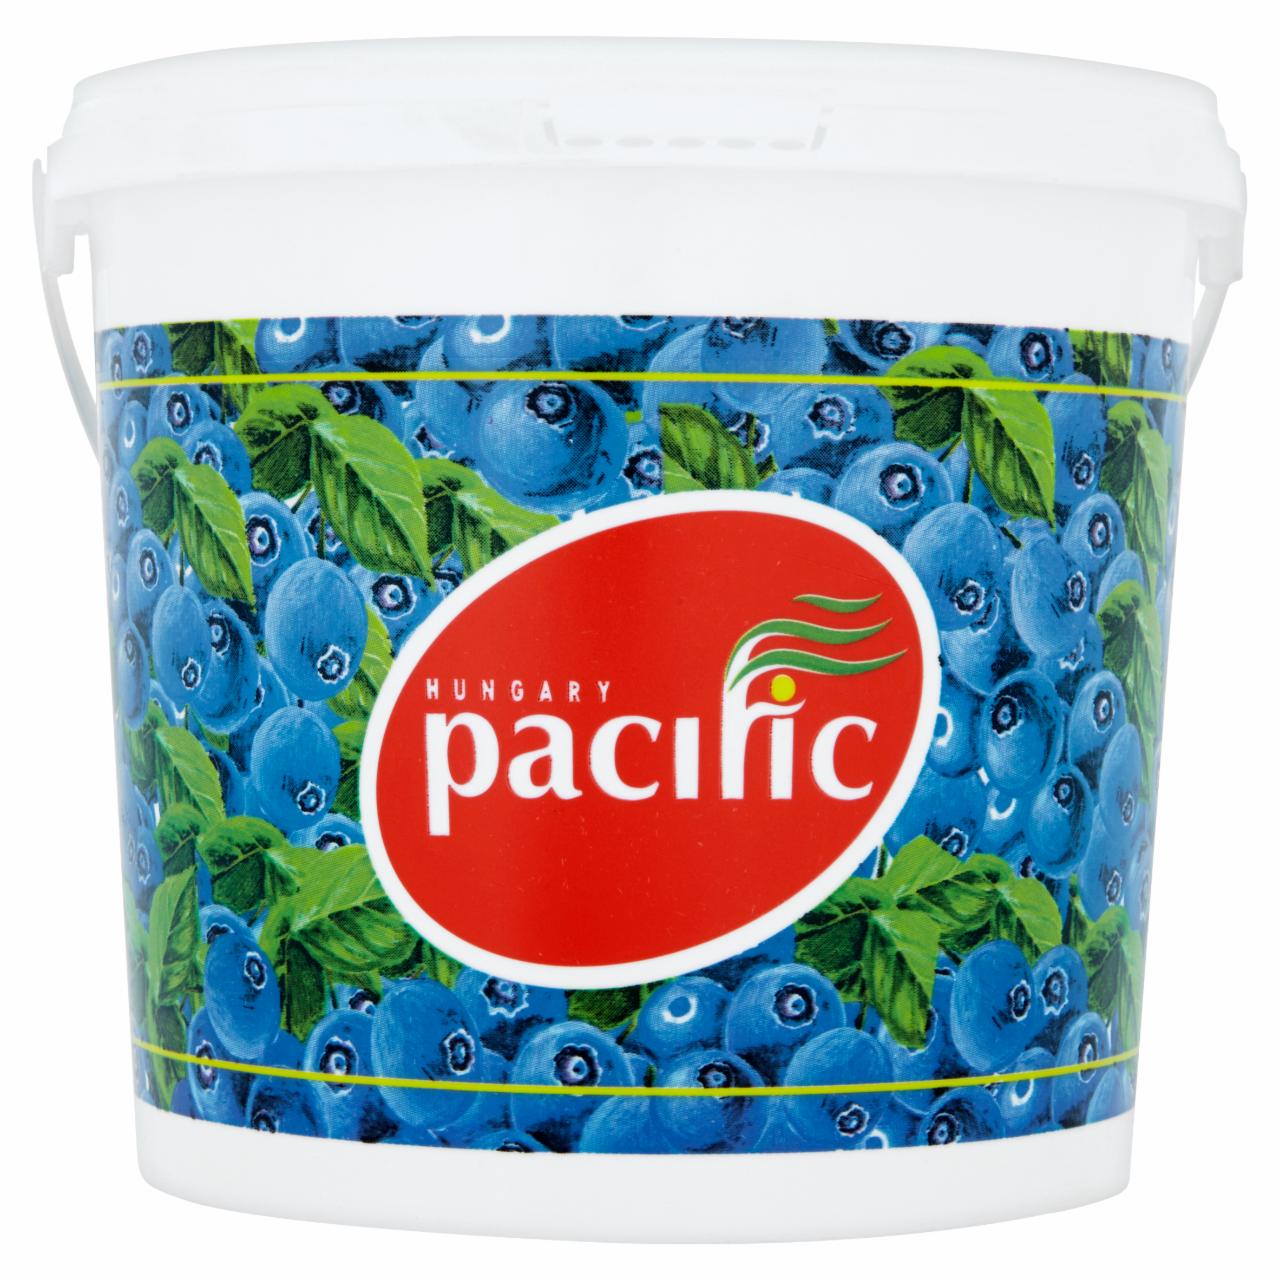 Képek - Pacific áfonya extradzsem háziasszony módra 3250 g